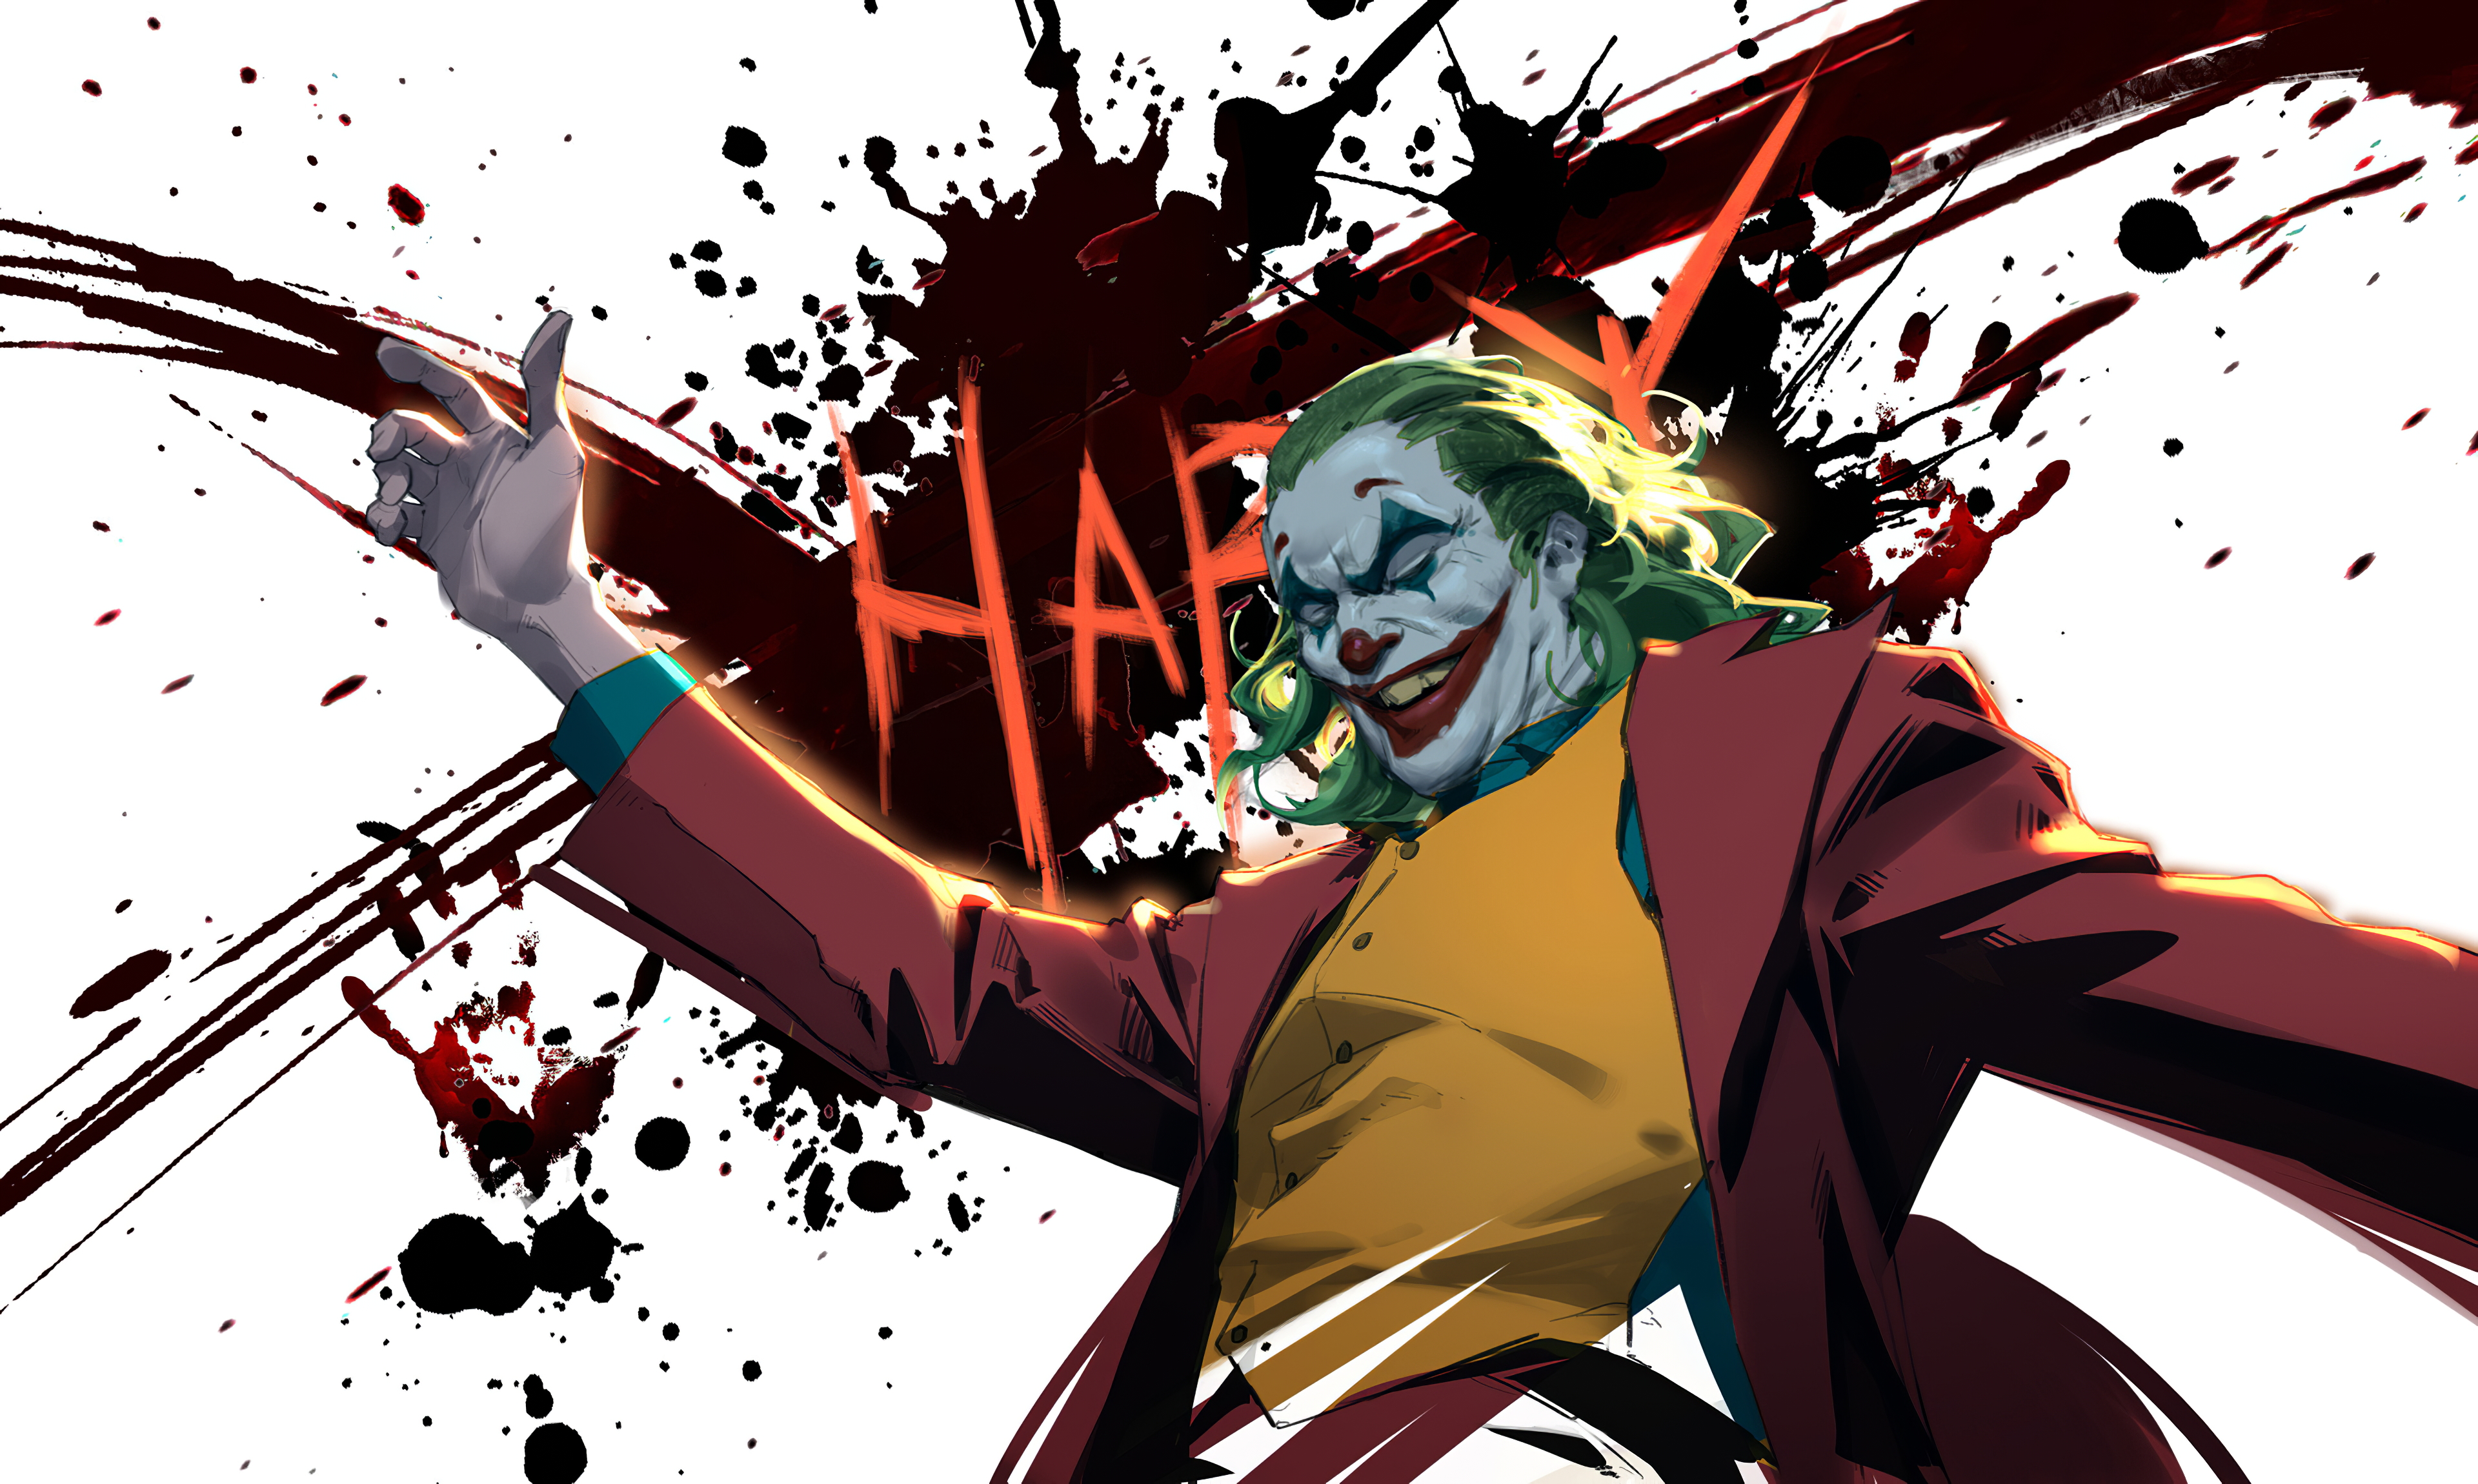 Joker art. Джокер Хоакин Феникс арт. Джокер арты Хоакин Феникс.